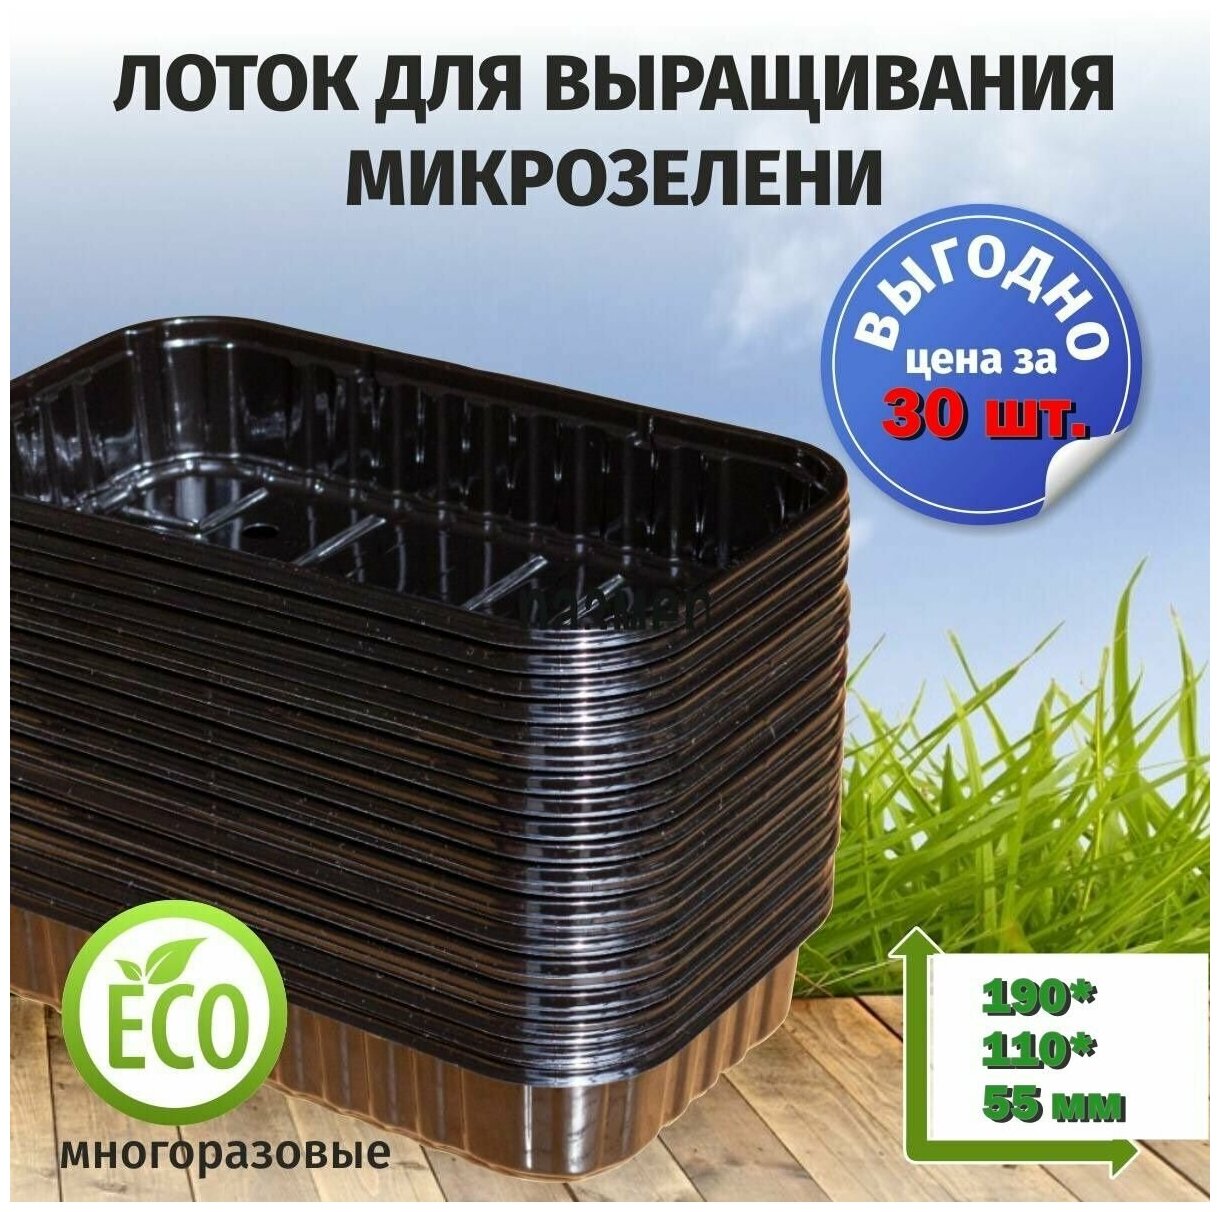 Лотки для микрозелени черного цвета / 180*110*55 / 30 штук, пластиковые контейнеры для проращивания рассады микрозелени